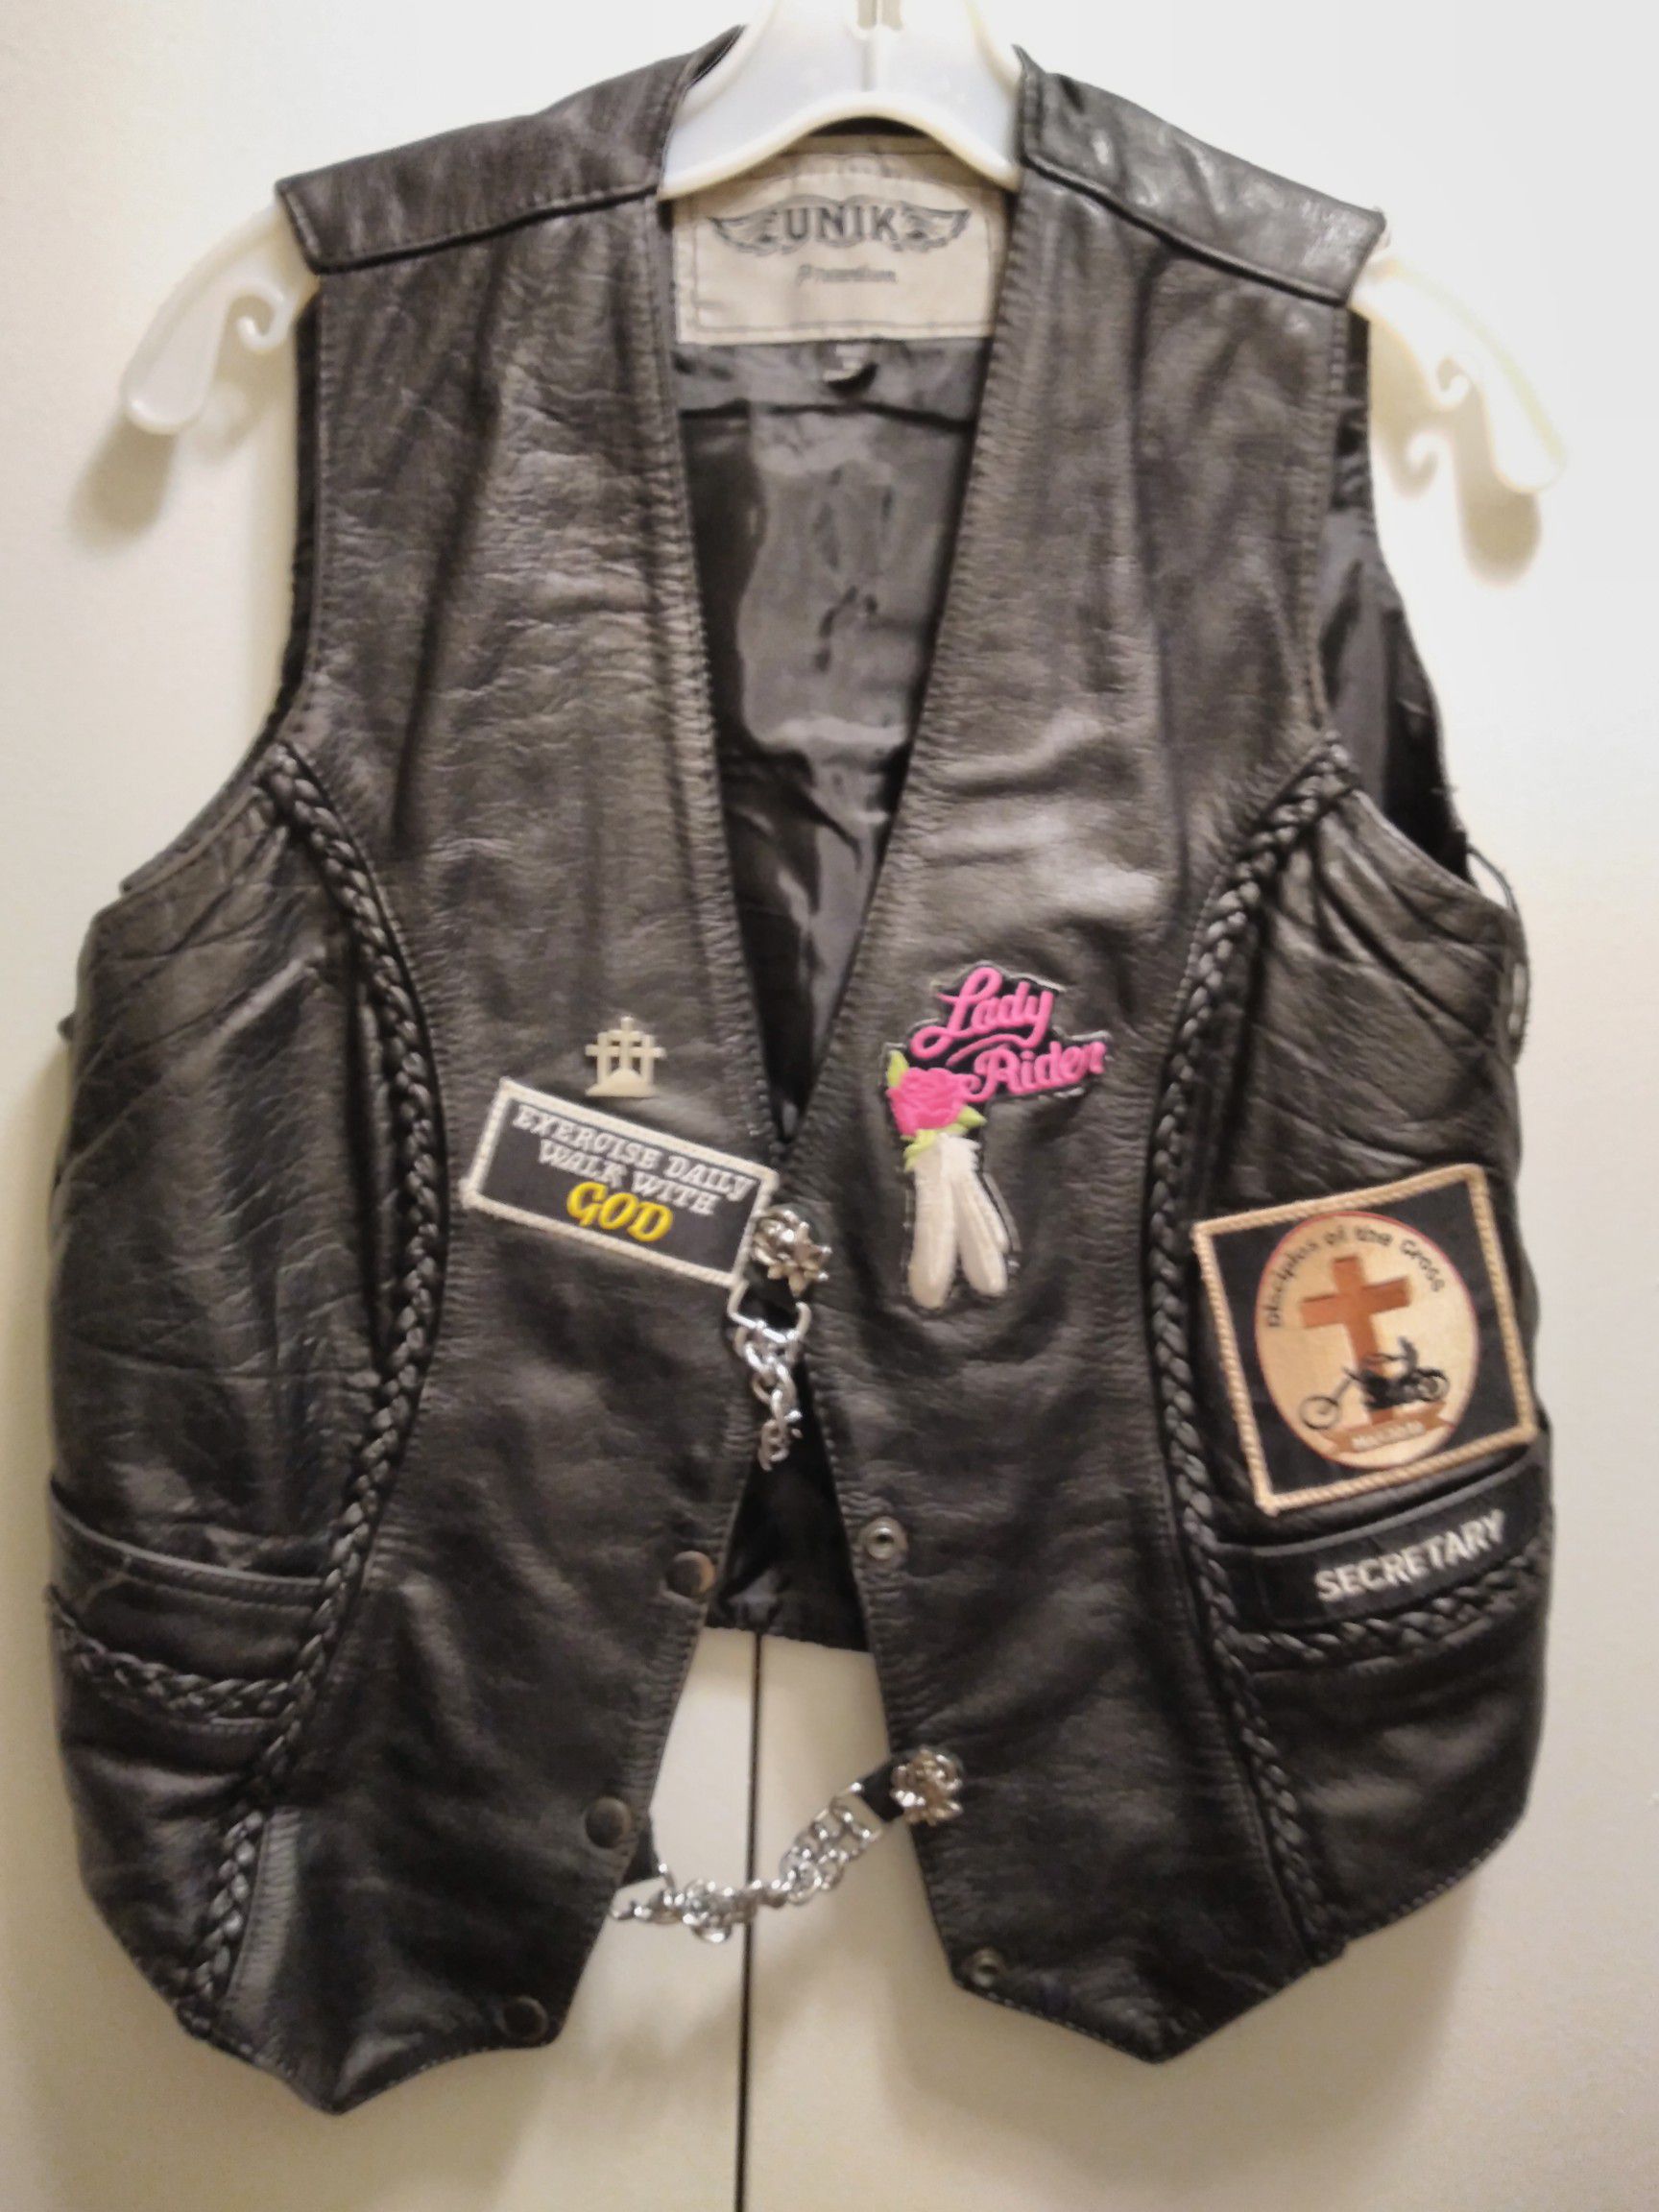 Unik Ladies Premium Leather Western Biker Motorcycle Laced Vest m $75